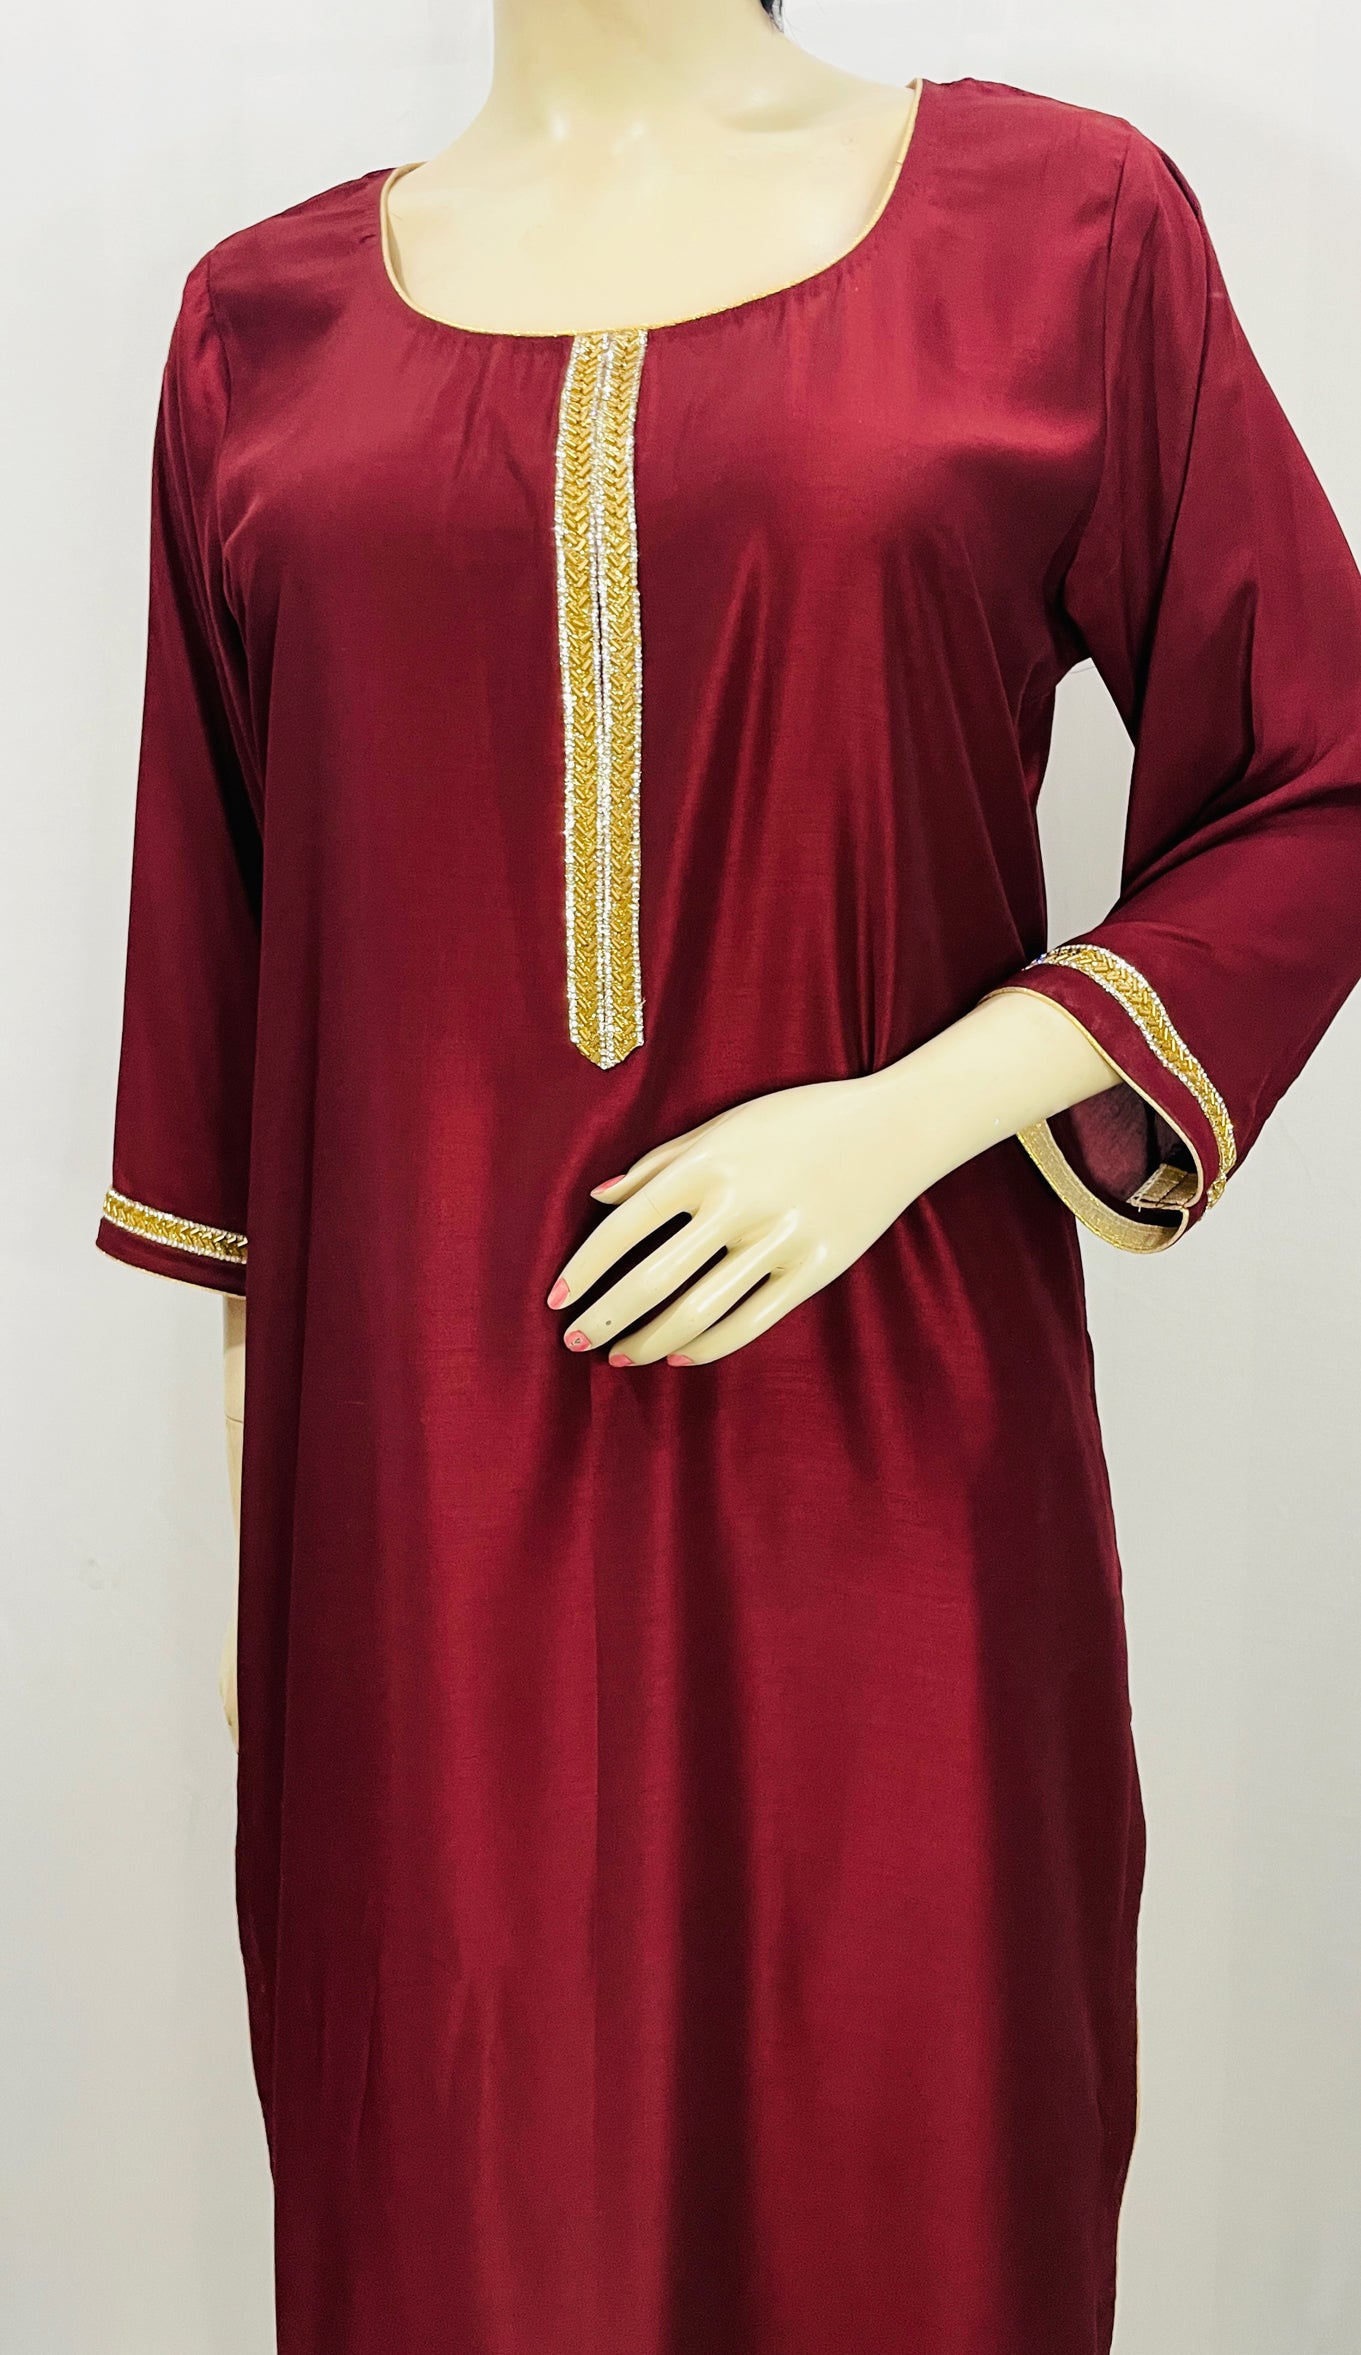 Choice of color aa dark maroon kurta and solid gray chanderi dupatta |  Indische outfits, Indische kleidung, Indische kleider